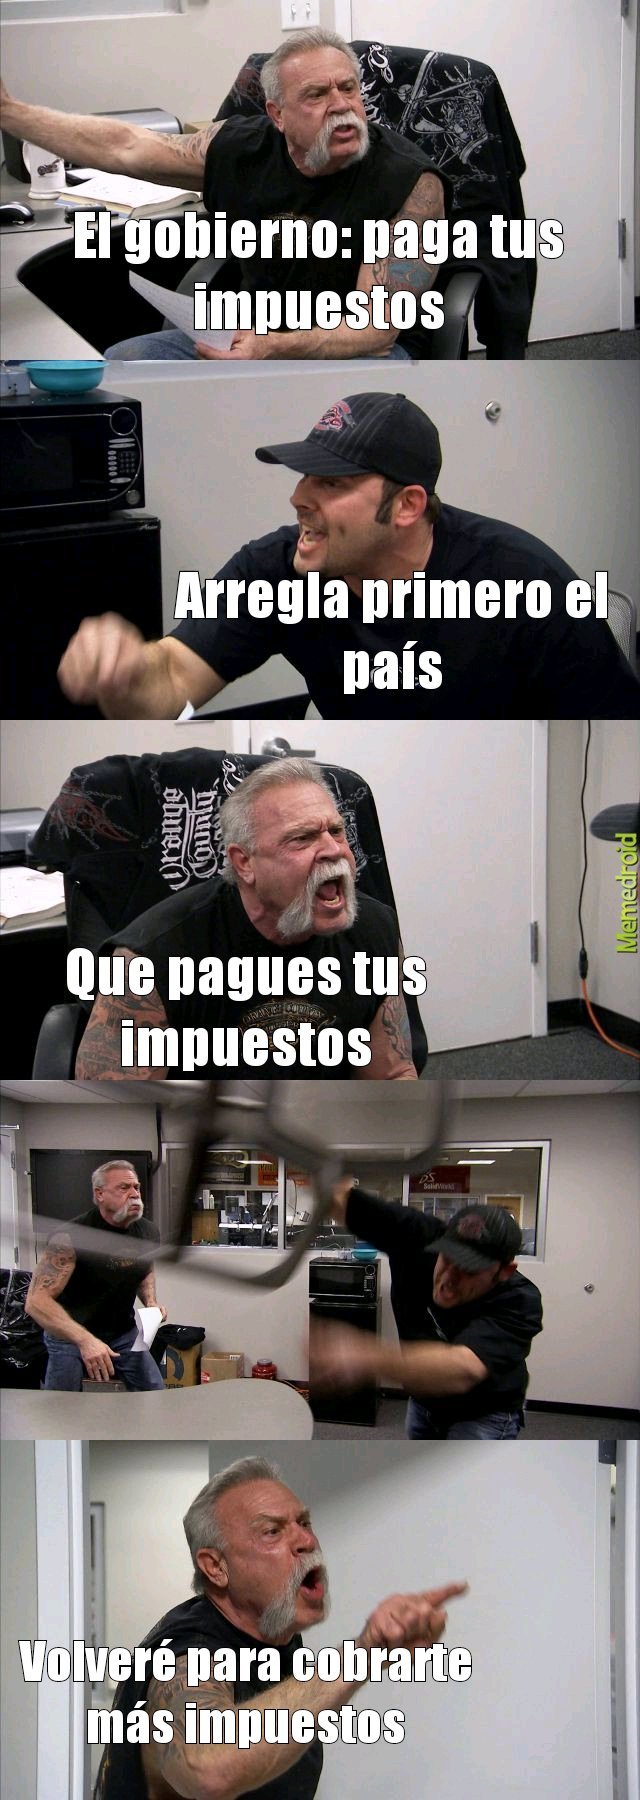 El gobierno latinoamericano - meme